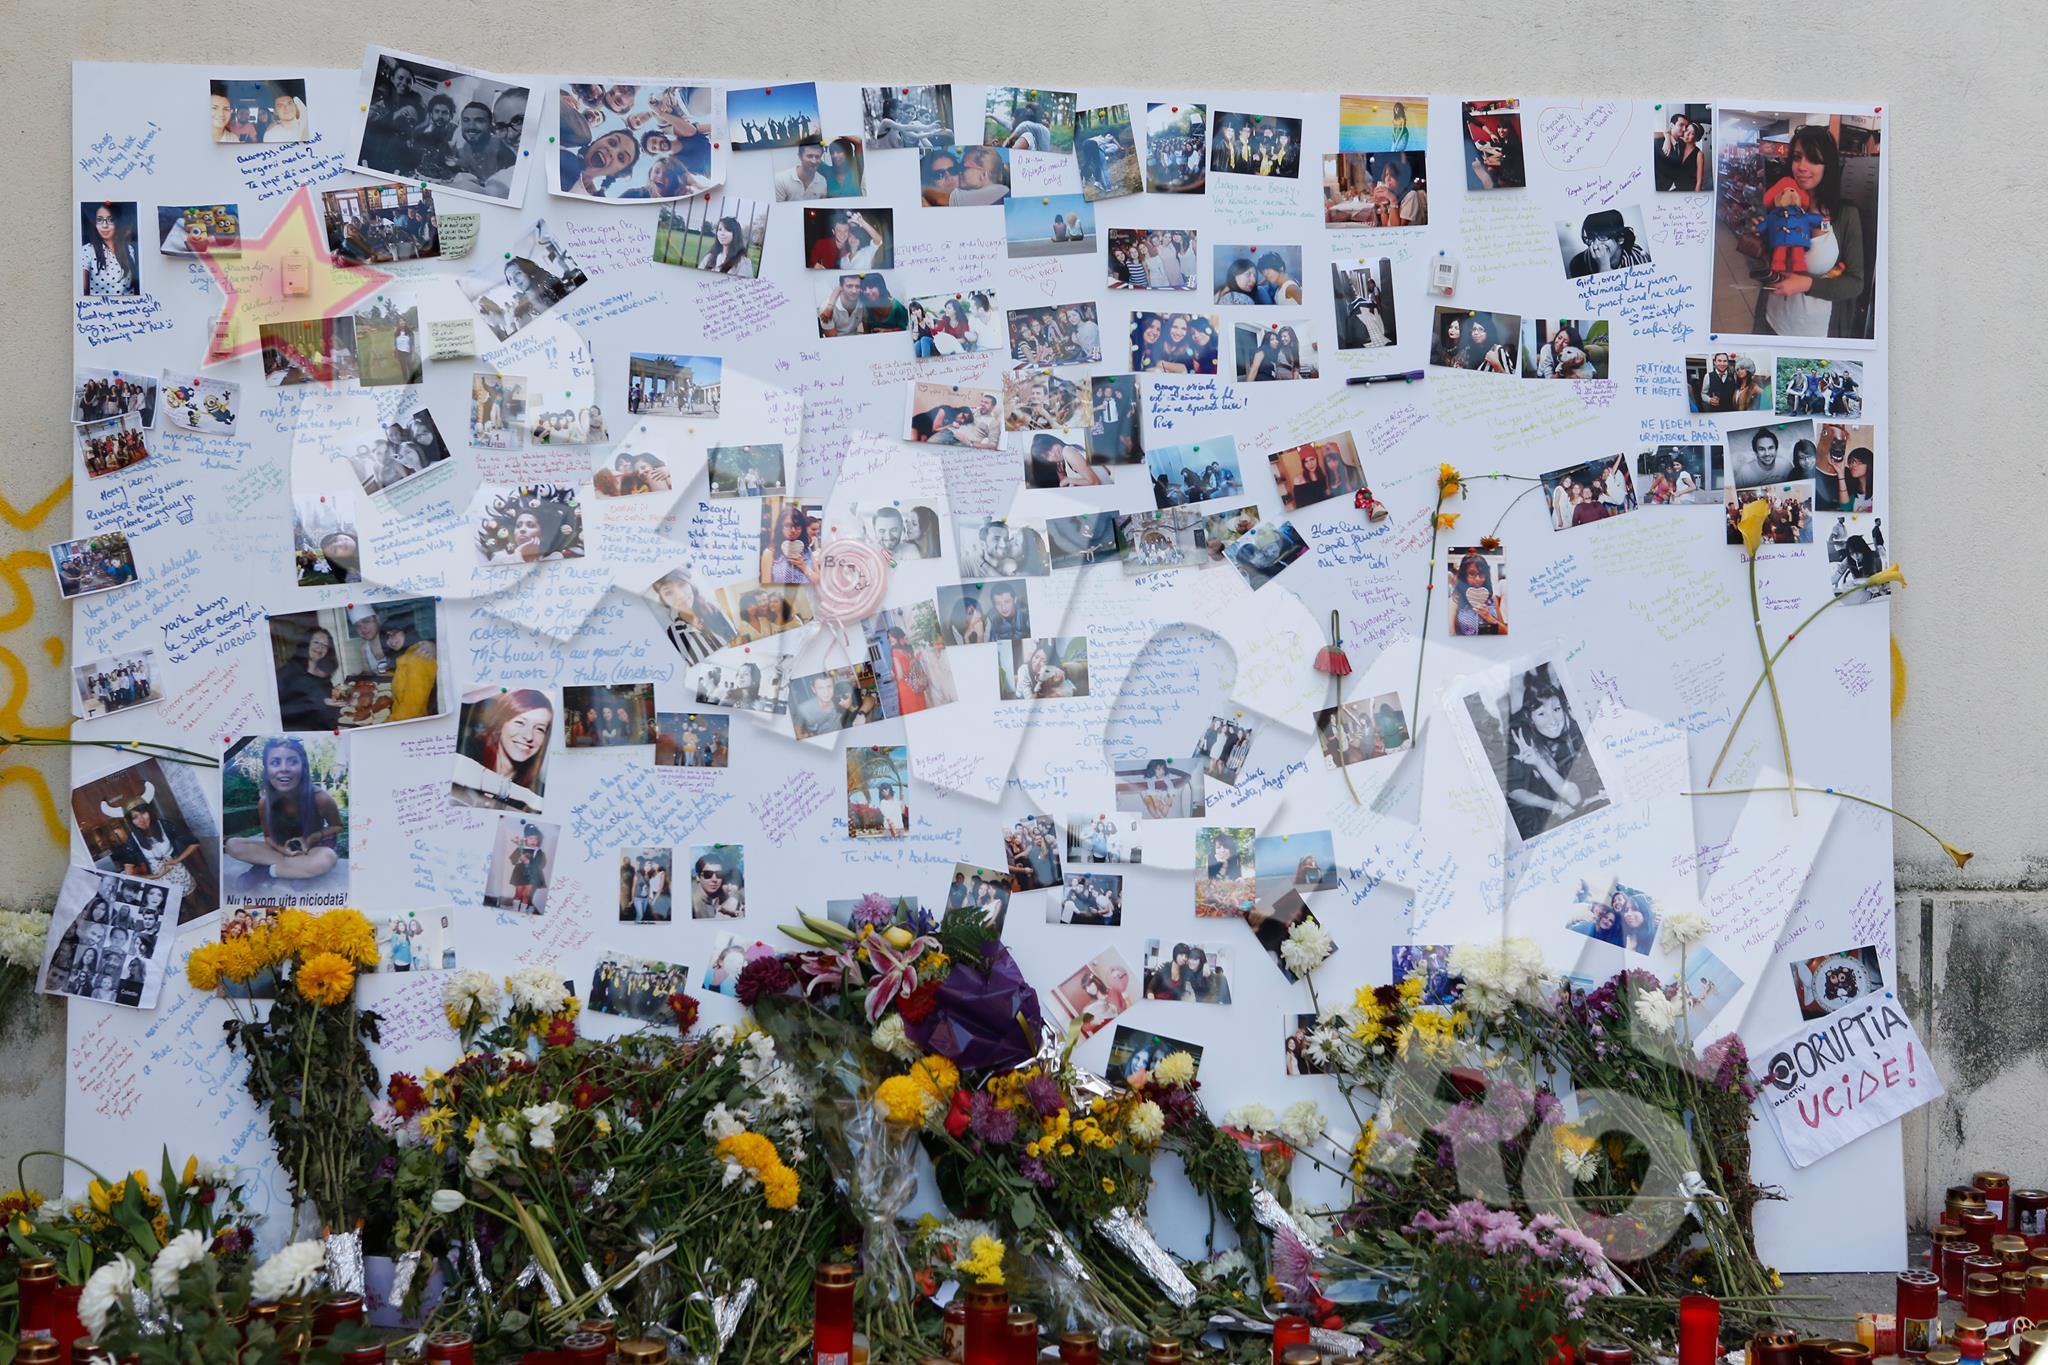 Pe o plansa mare au fost puse mesaje si fotografii cu tinerii care si-au pierdut viata in Colectiv